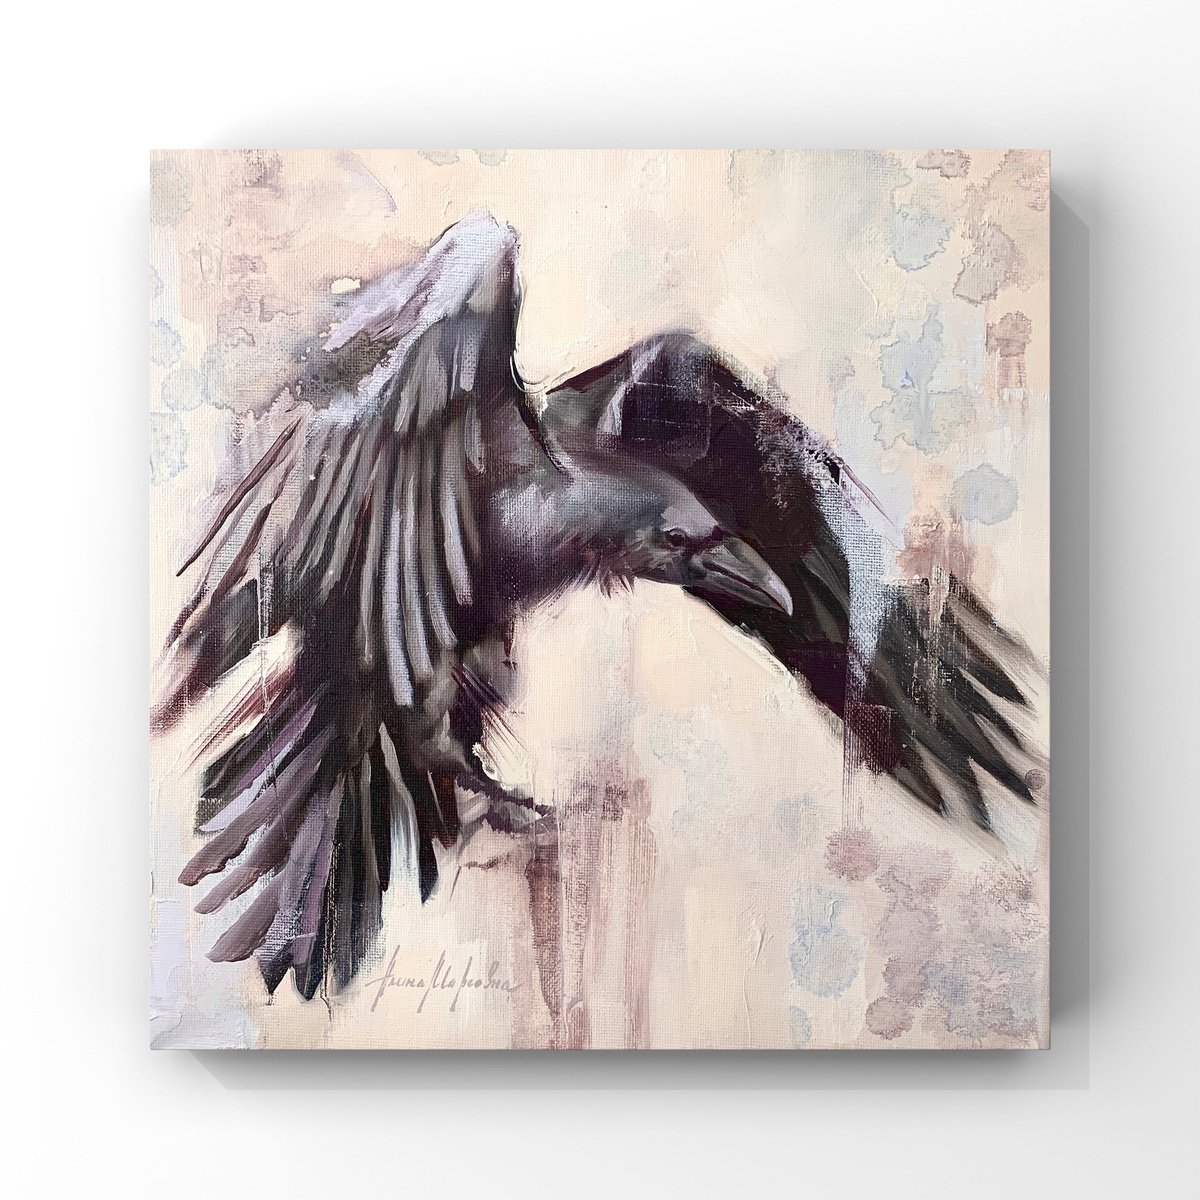 Raven #2 by Alina Marsovna